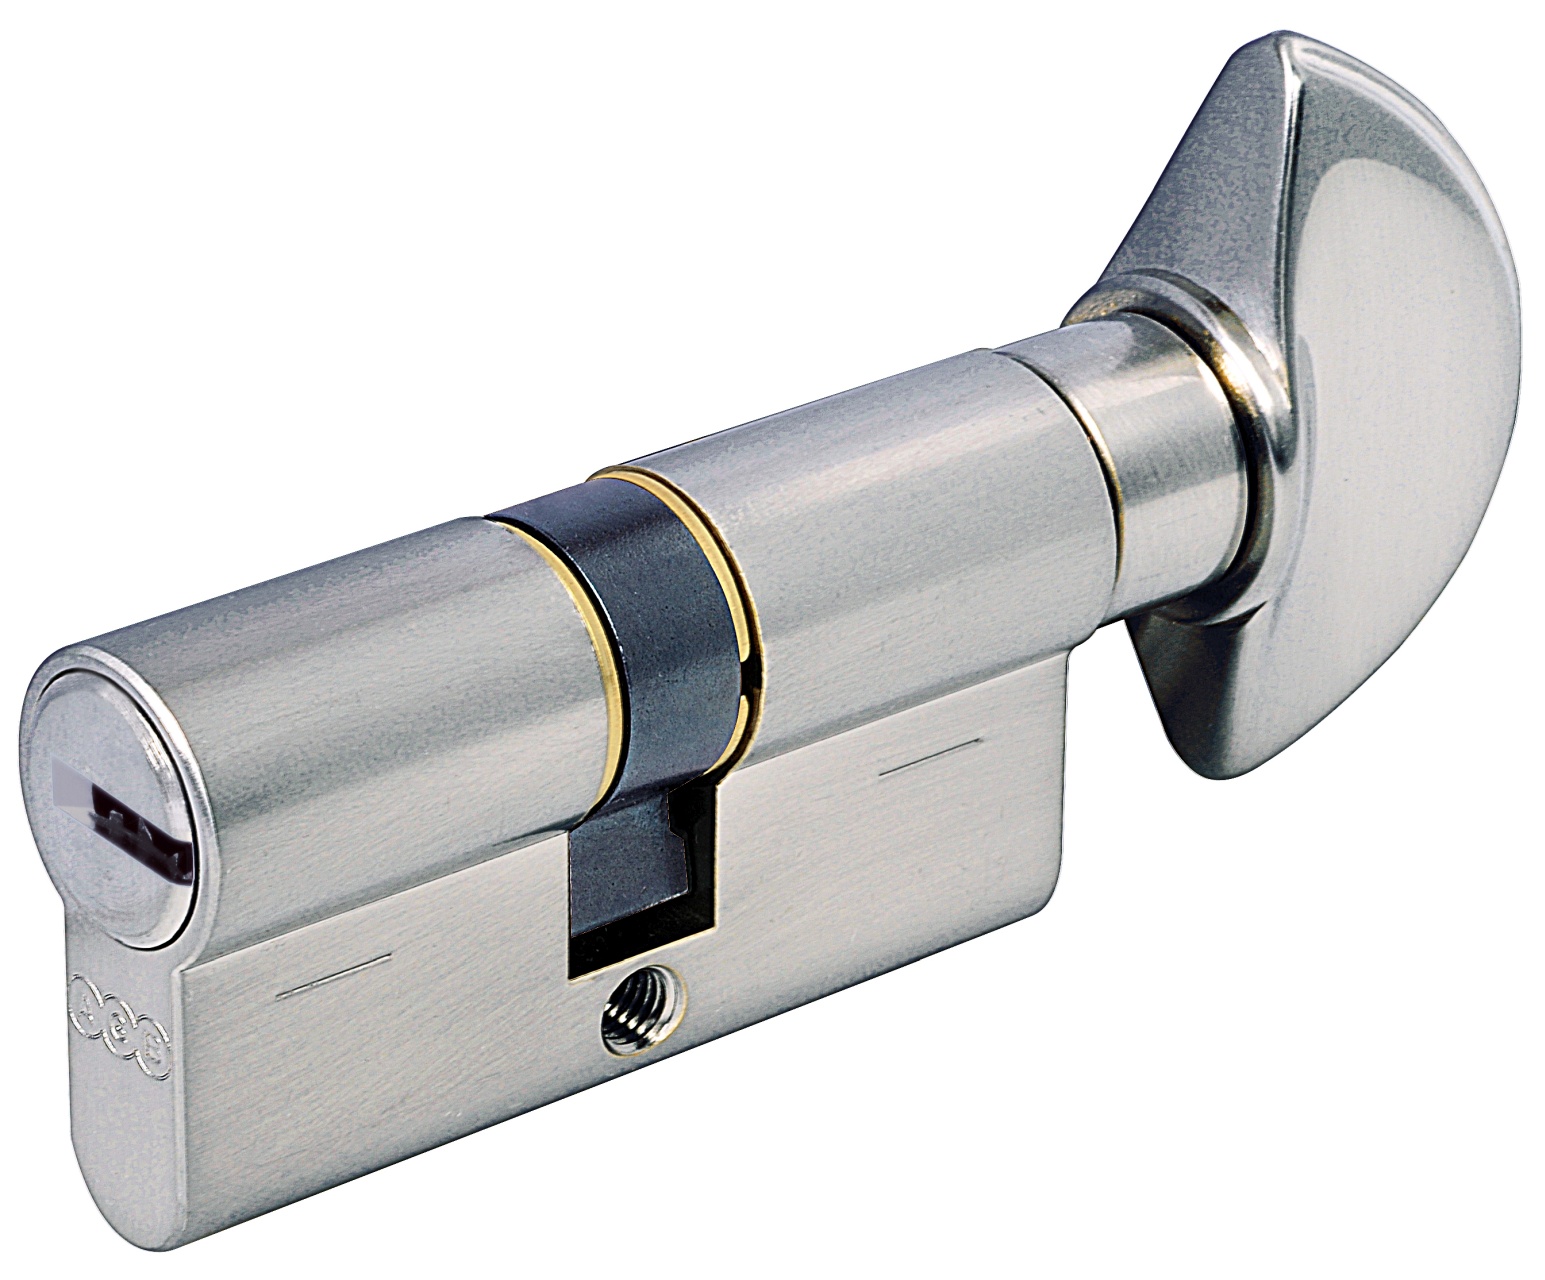 AGB -  Cilindro SCUDO 5000 PS frizionato anti bamping con chiave e pomolo - col. NICHELATO OPACO - lunghezza 65 - misura P-30-10-25